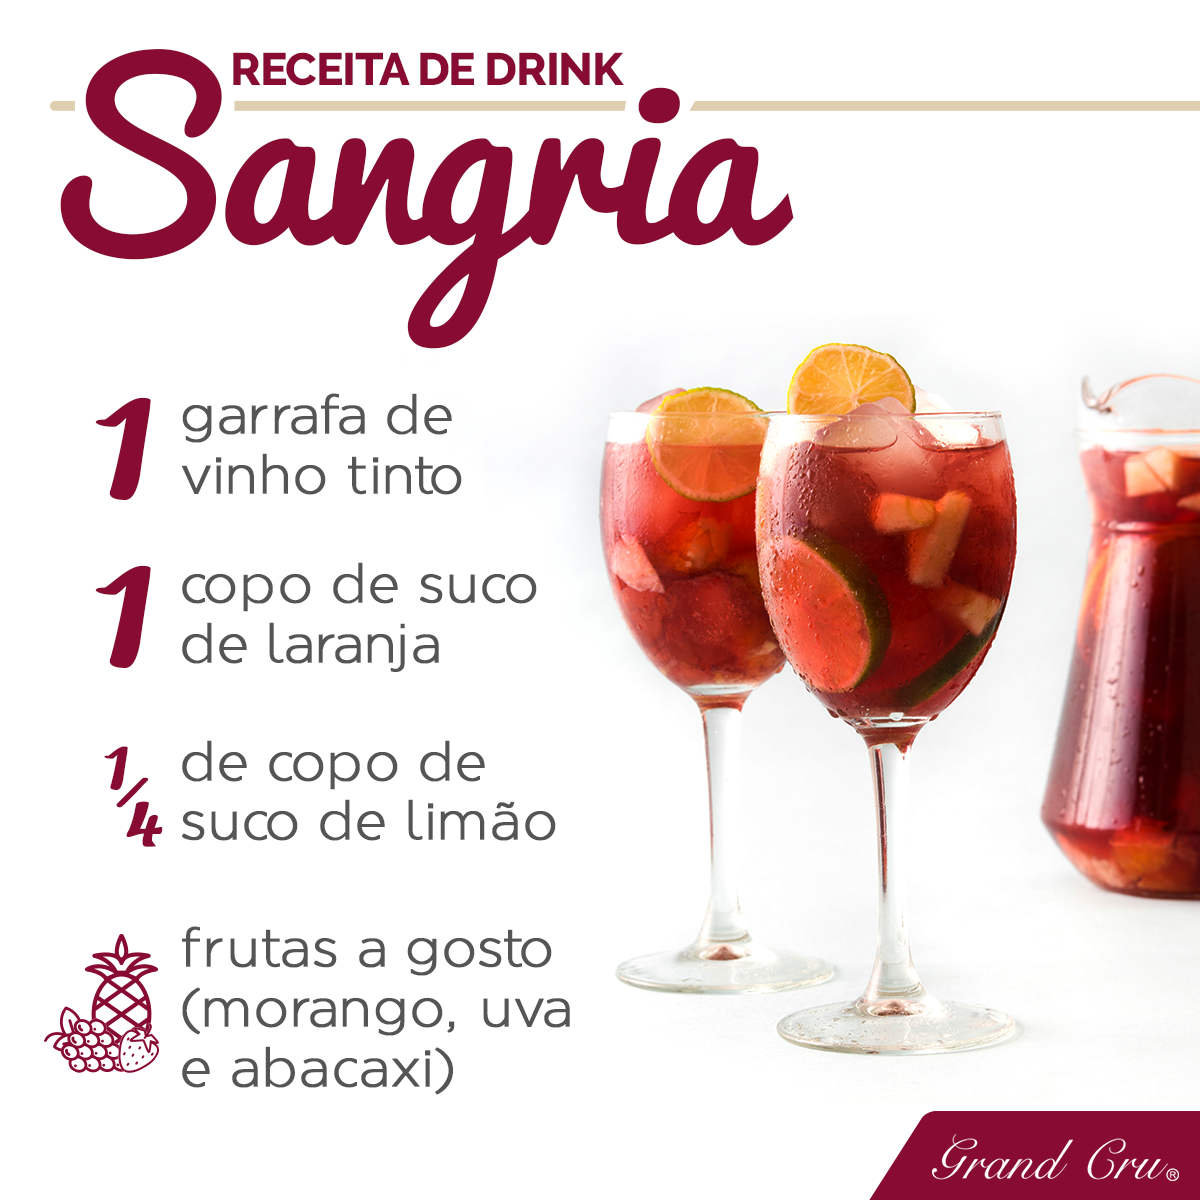 sangria-receita-drink-vinho-facebook